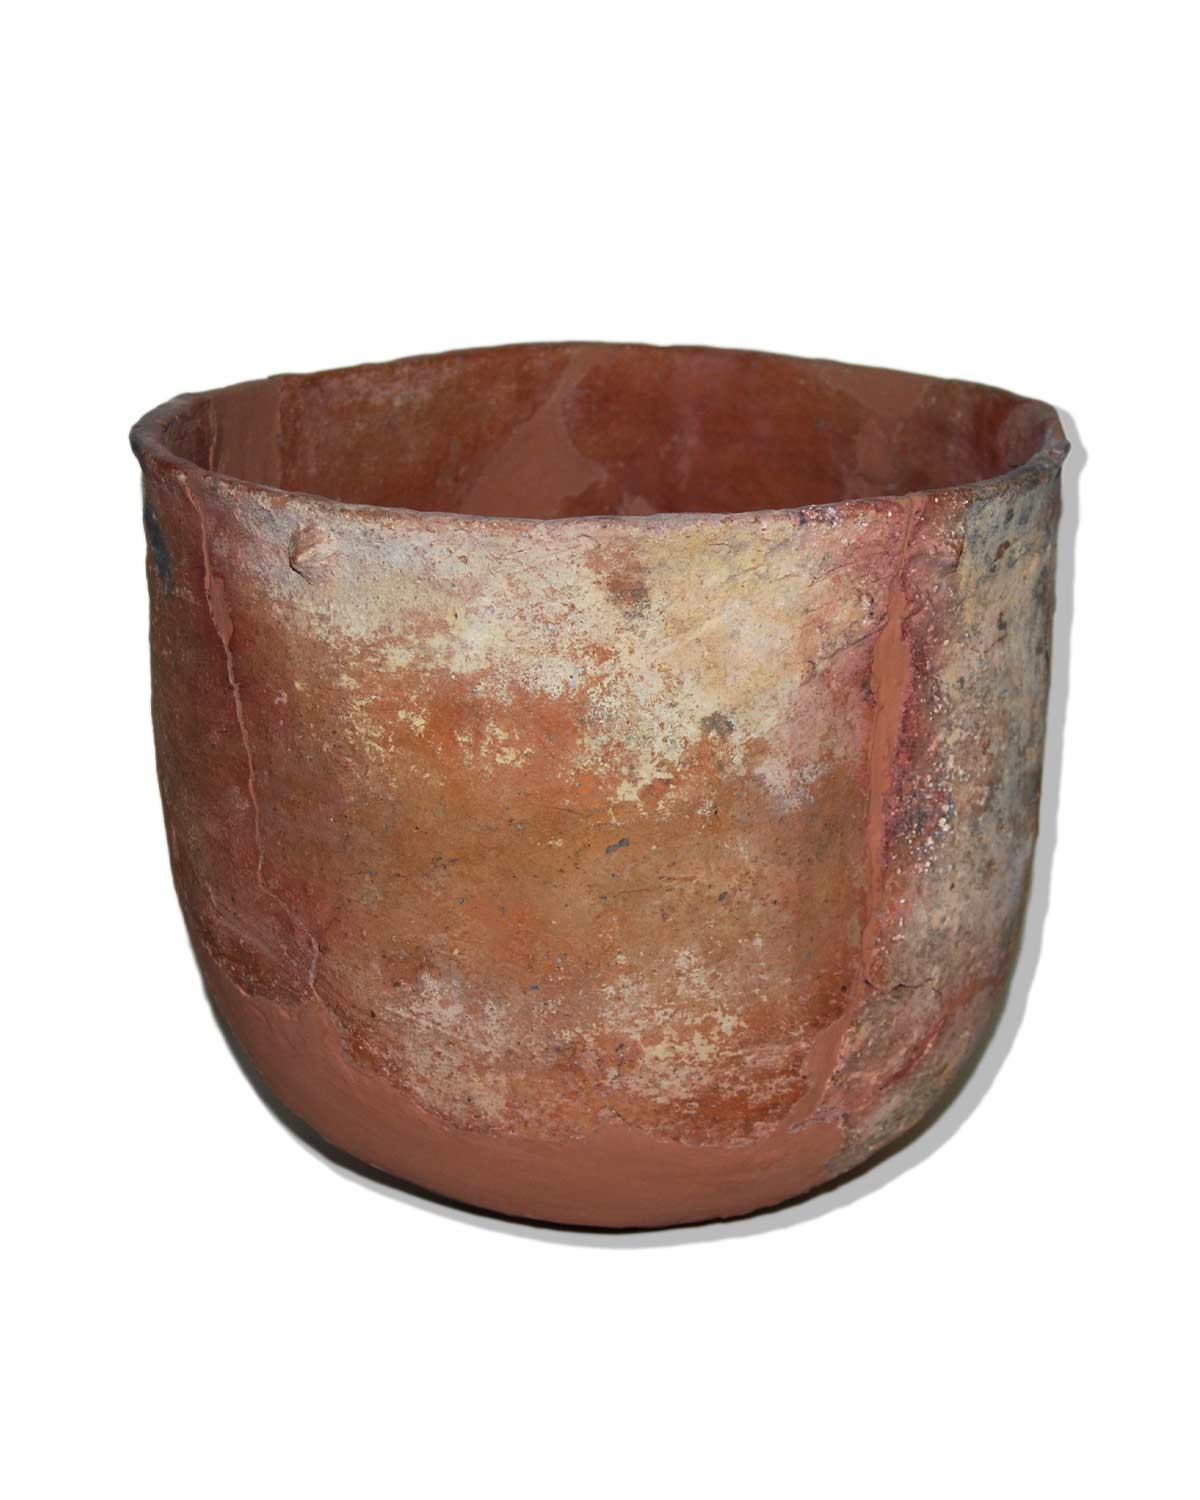 Orza de cerámica a mano. Cabezo de las Particiones (Rojales). II milenio a.C.